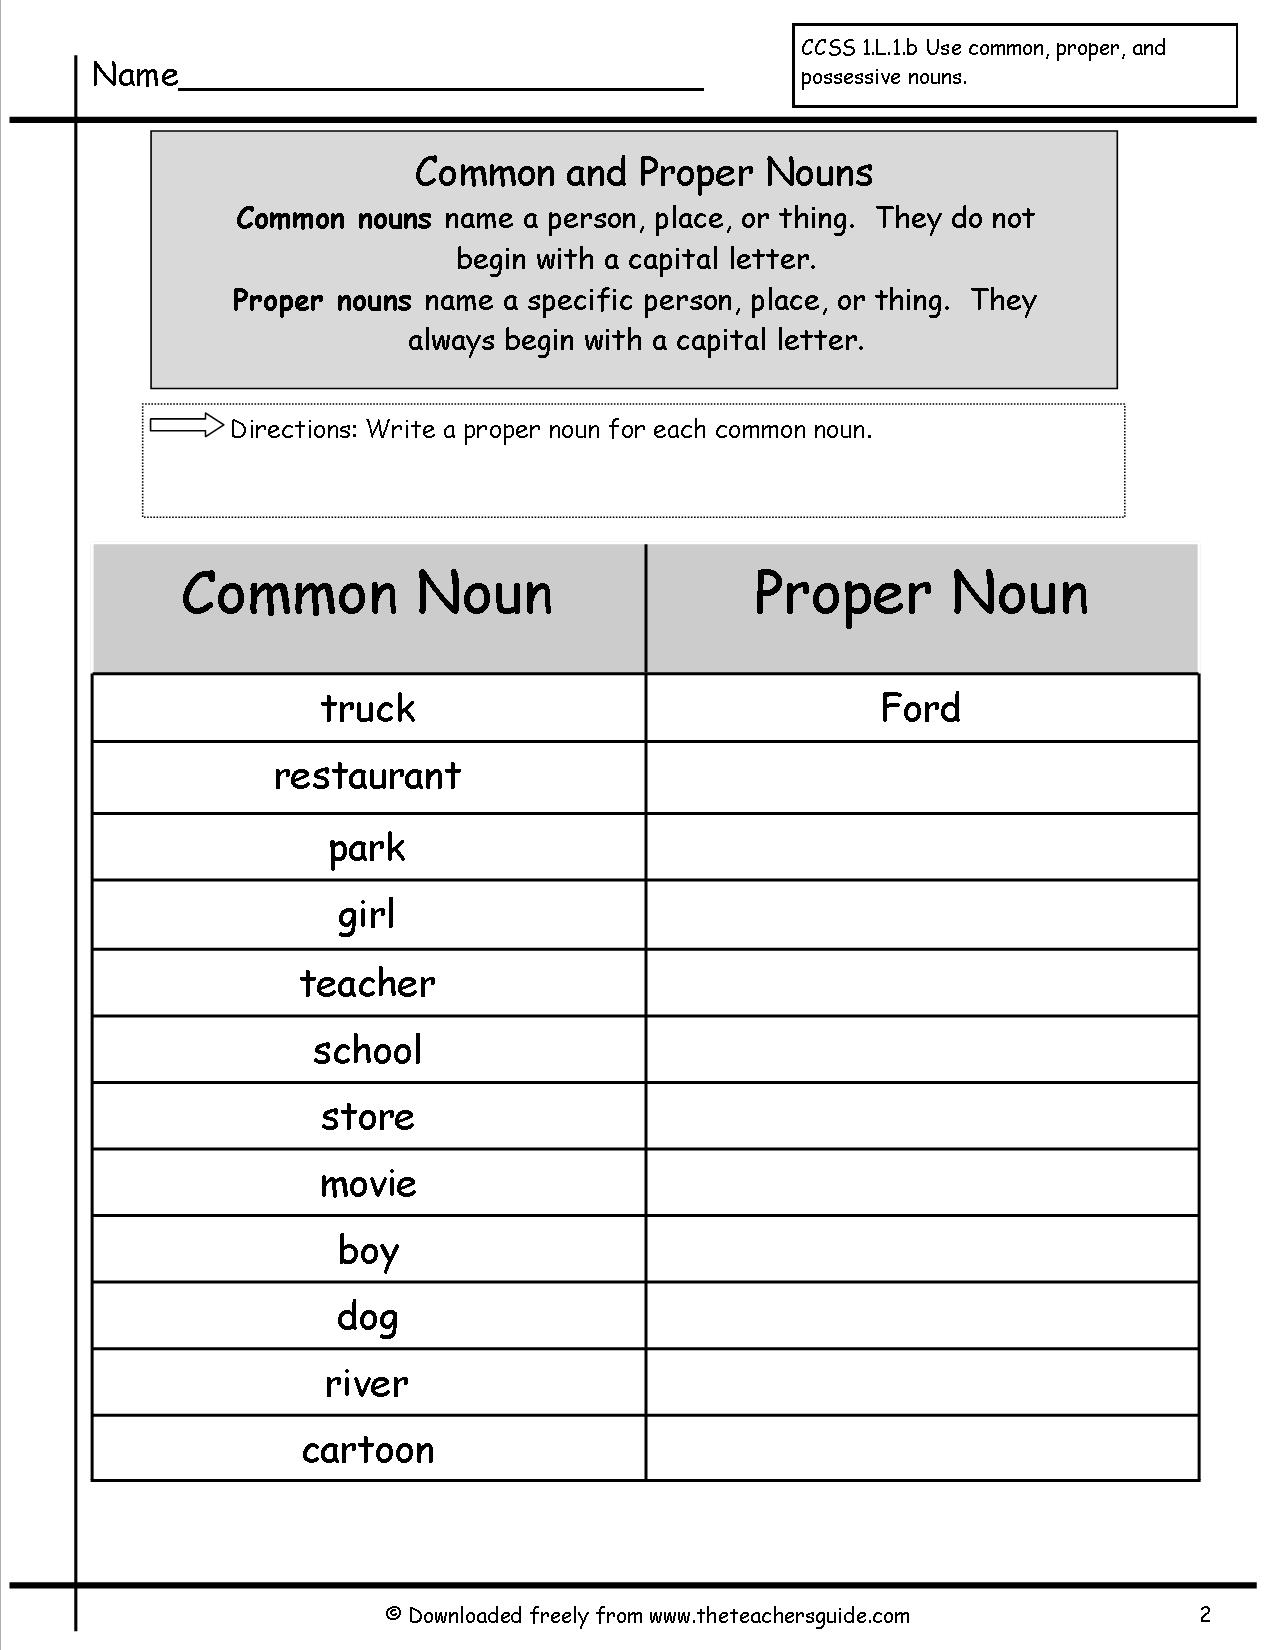 15-best-images-of-reading-worksheets-grammar-test-4th-grade-grammar